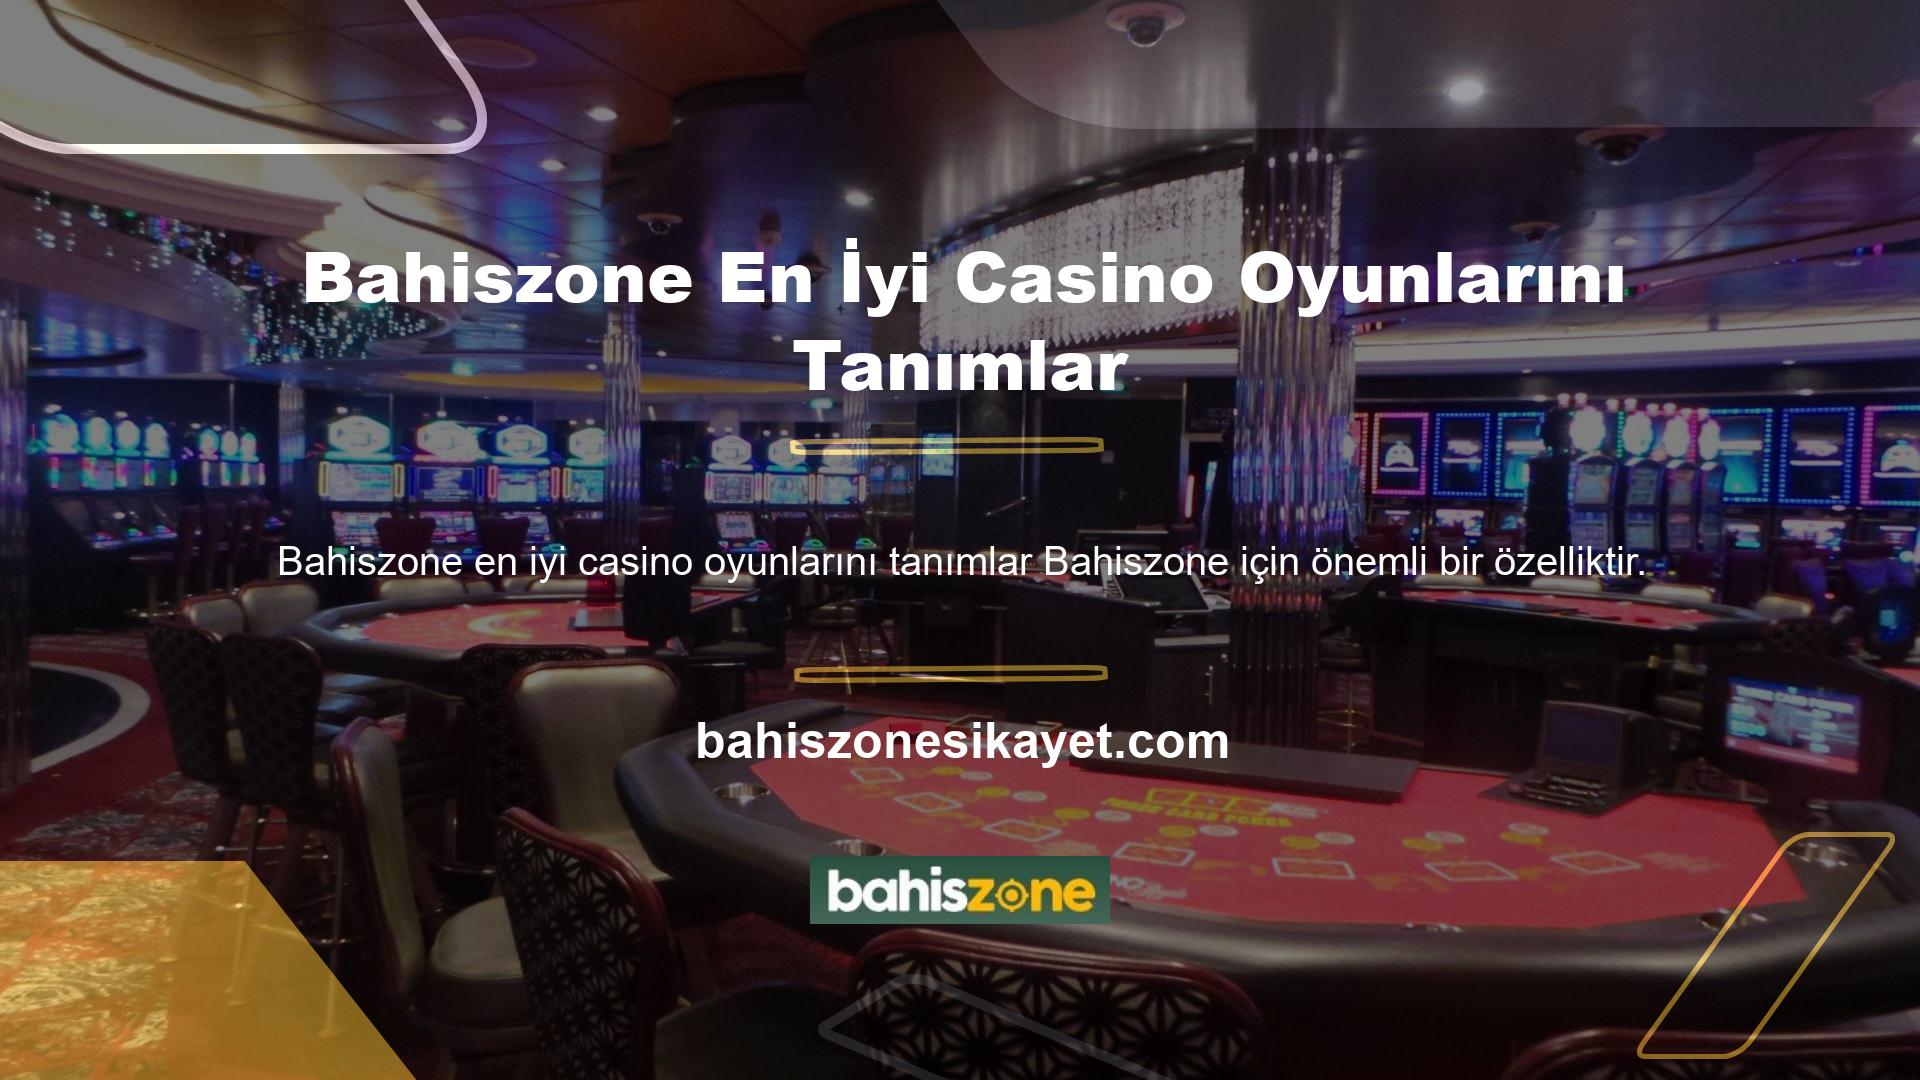 Bingo oynamak için web sitesini başka herhangi bir yerden daha iyi güncelleyen çok iyi bir casino web sitesi bulduk